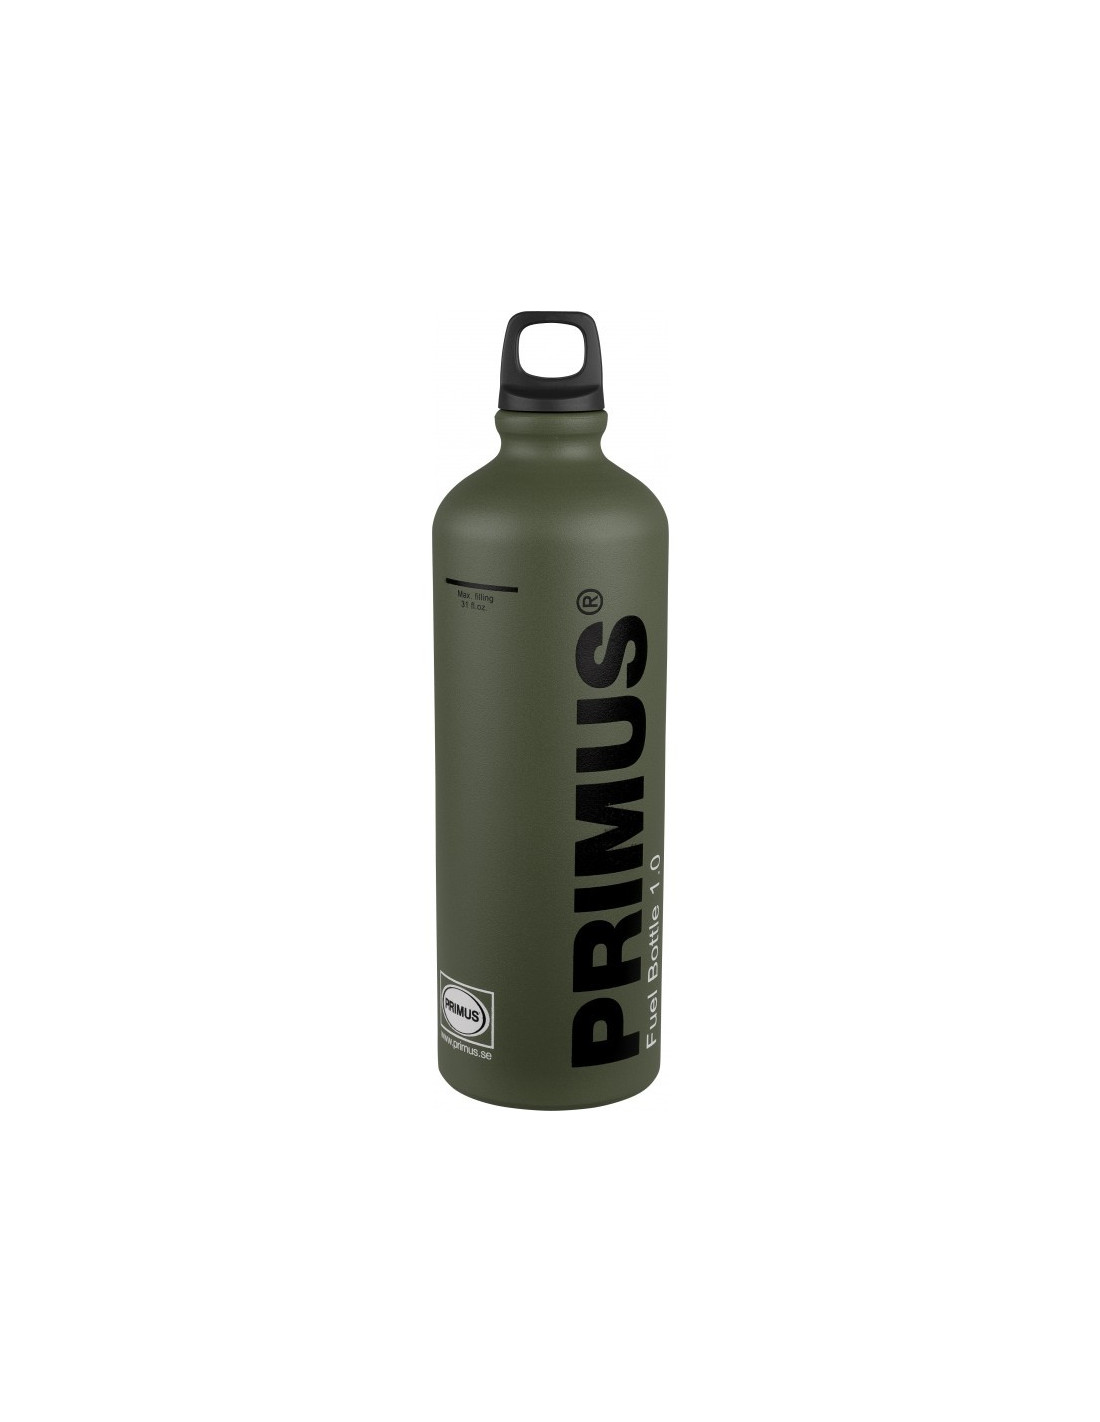 Primus Brennstoffflasche Fuel Bottle - Grün 1,0 l zum Bestpreis kaufen